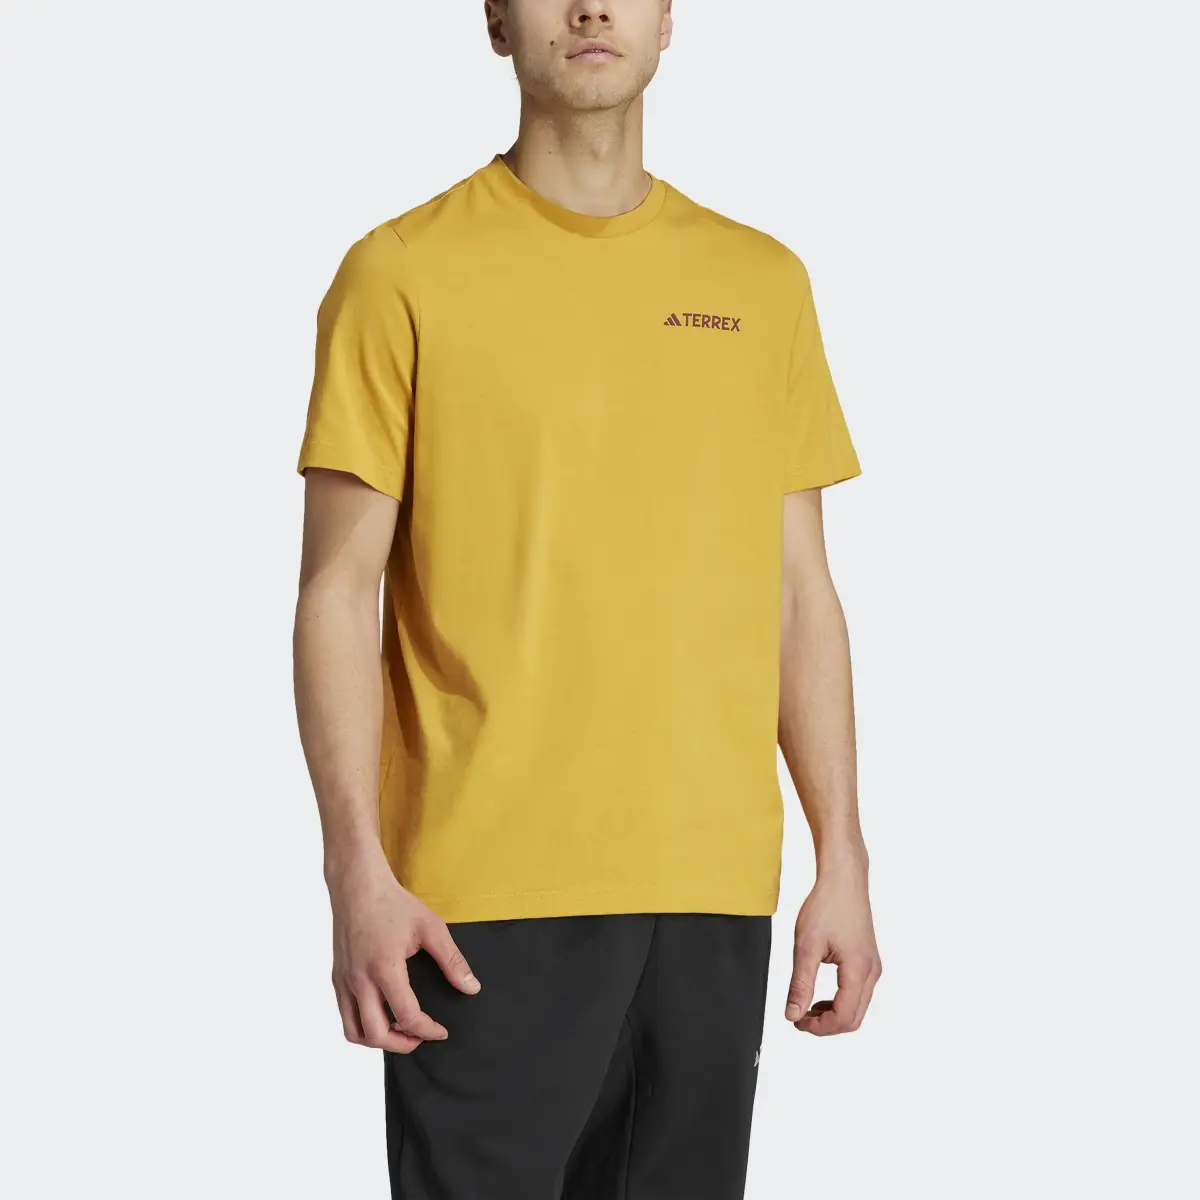 Adidas Camiseta Terrex Graphic Altitude. 1